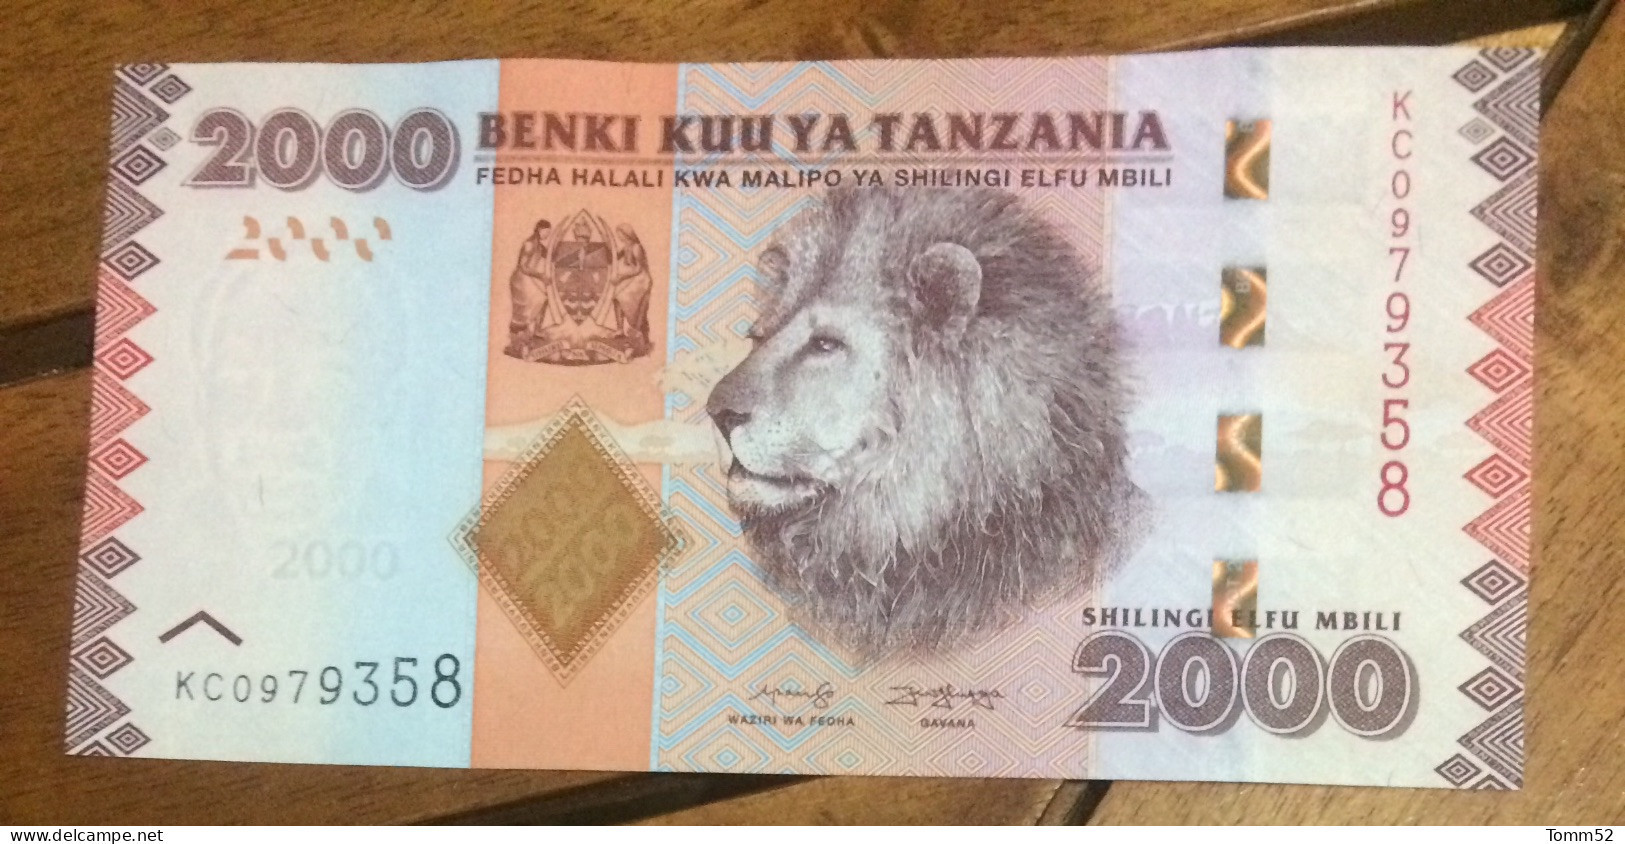 Tanzania - Tanzania 10000 shillings 2020 P-44 (44c) UNC